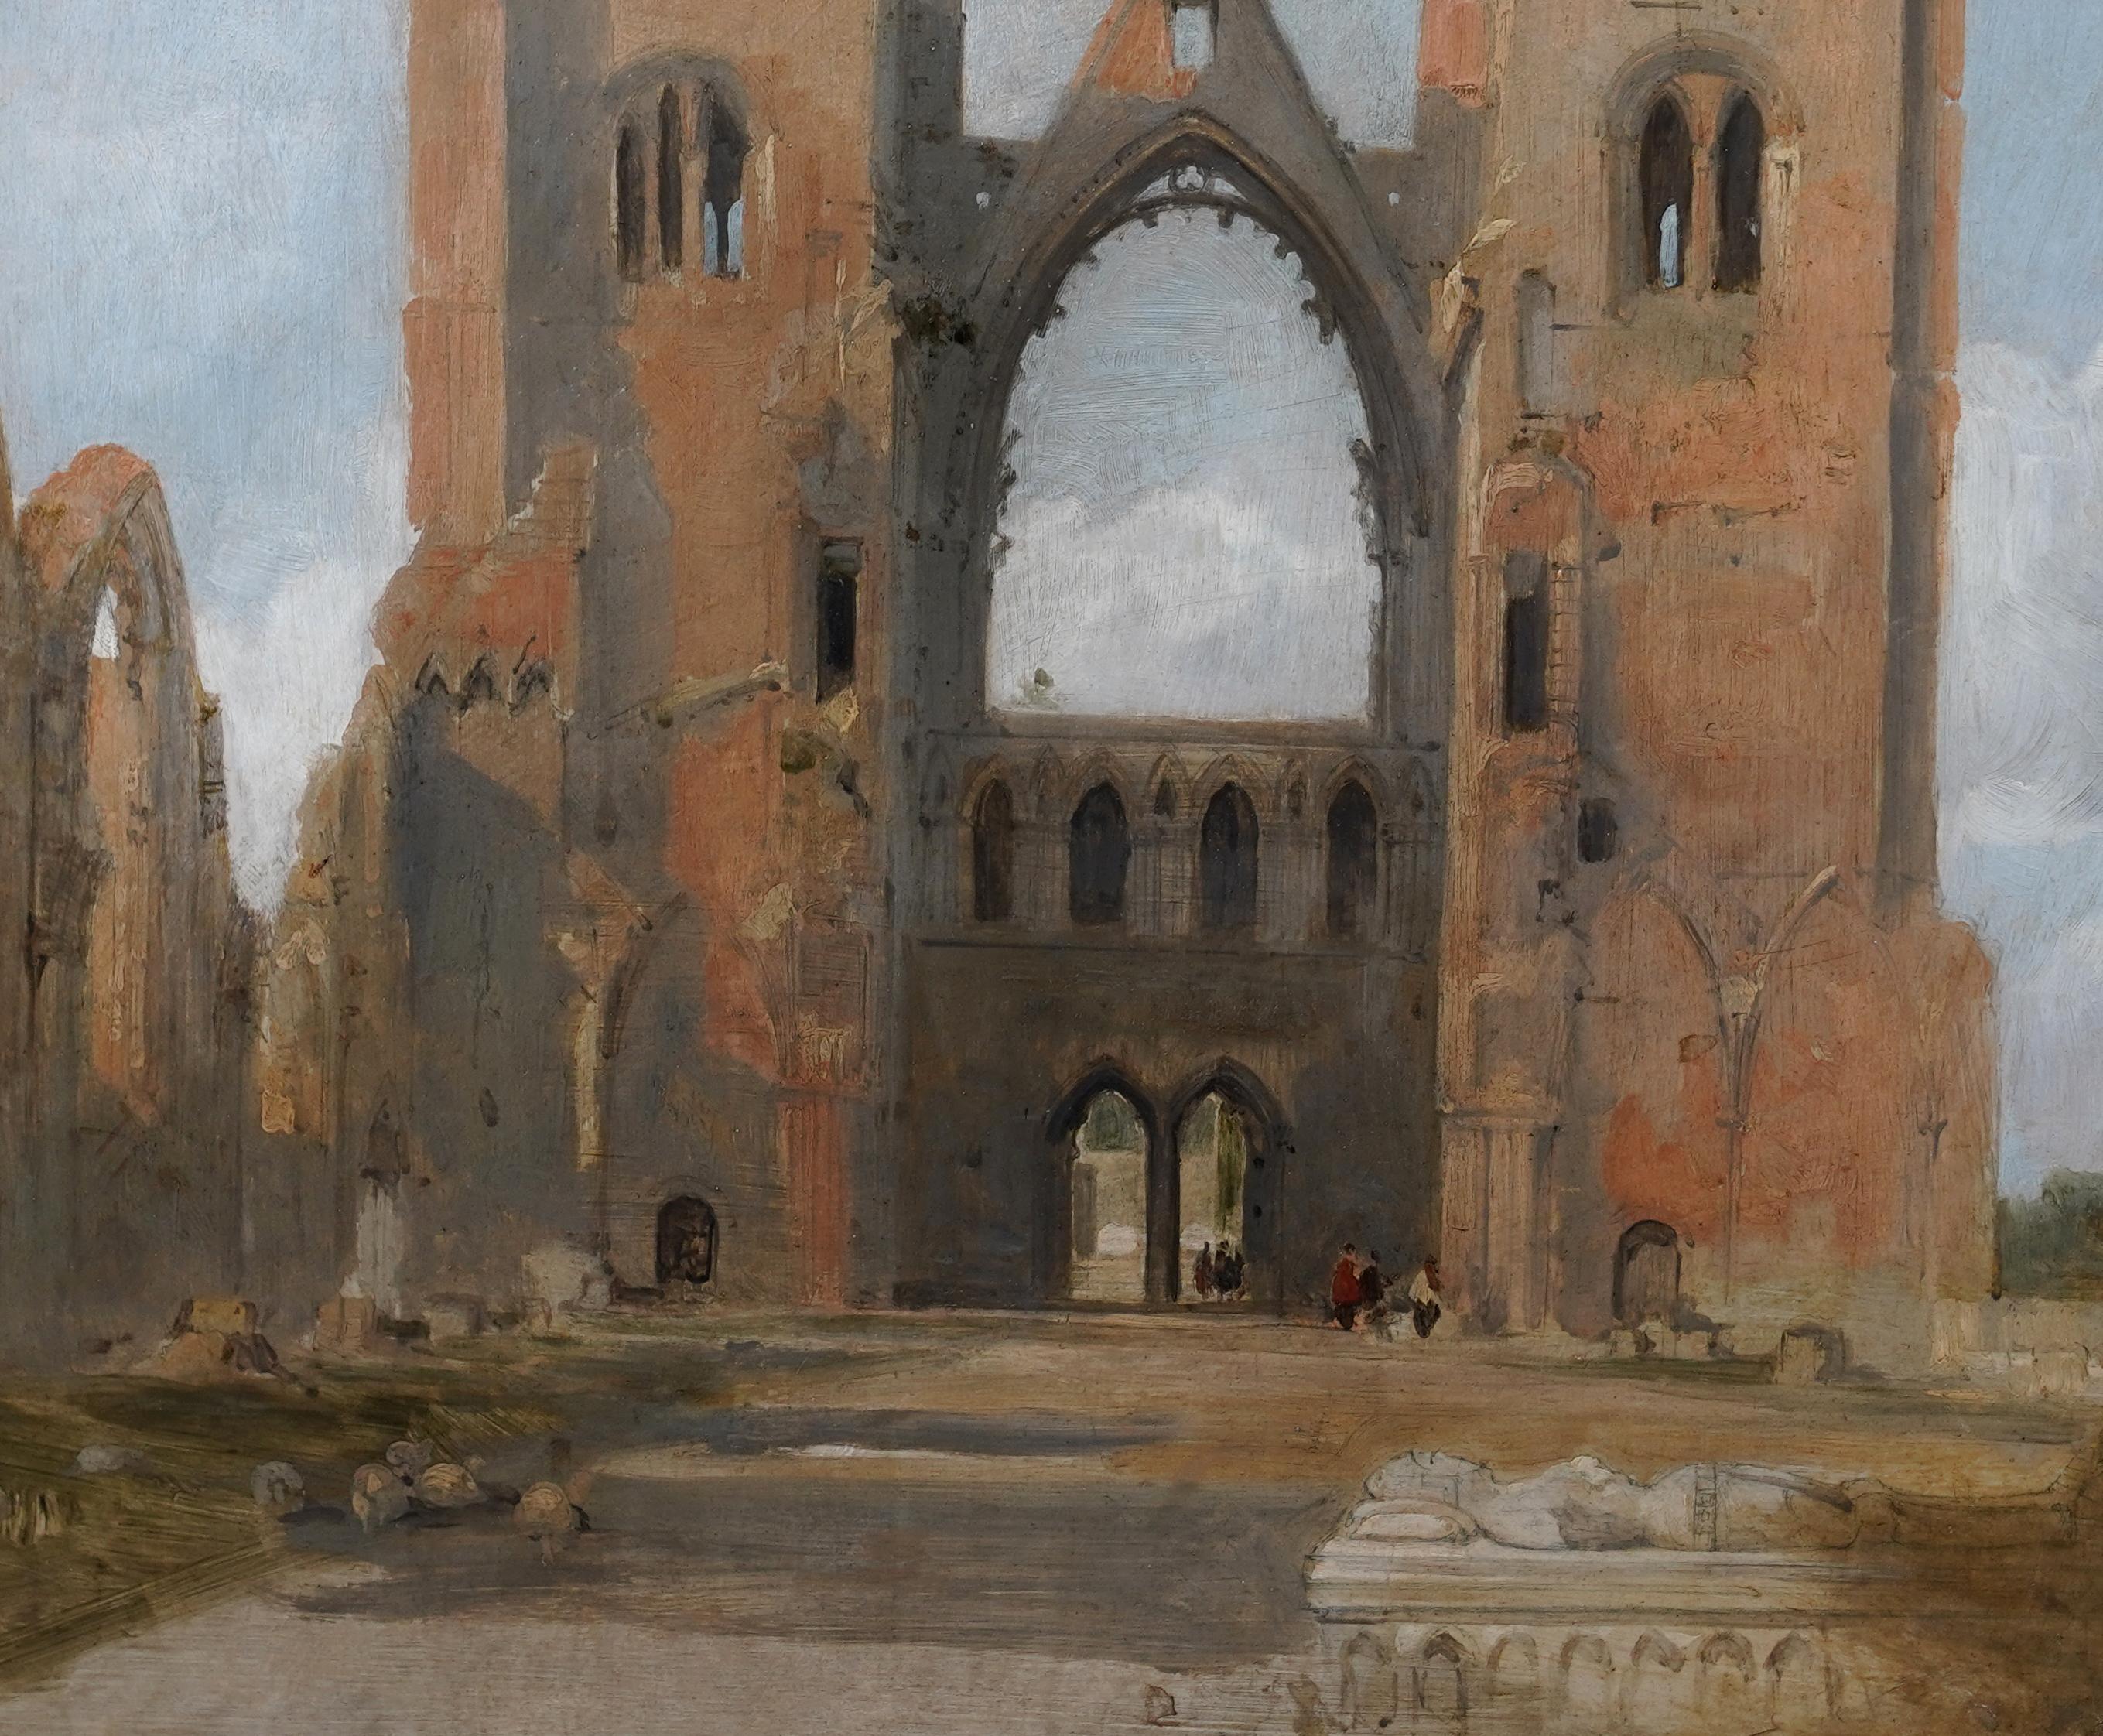 David Roberts, célèbre artiste écossais du XIXe siècle, a peint ce superbe paysage architectural à l'huile. Peinte en 1848, elle représente les ruines de la cathédrale d'Elgin, une ruine historique située à Elgin, dans le Moray, au nord-est de